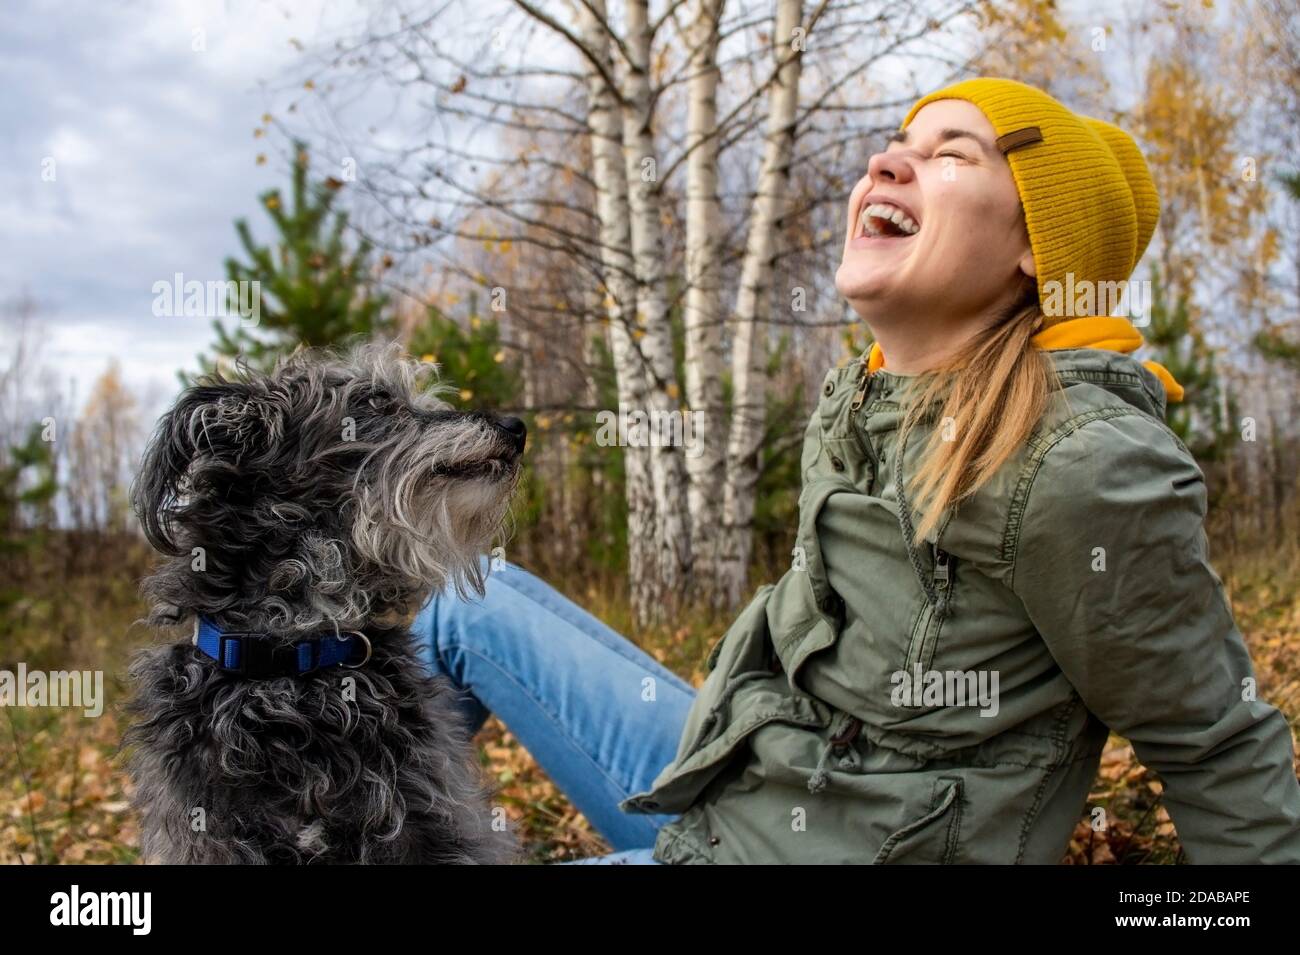 Jeune femme riant jouant avec son chien bien-aimé moelleux dans la forêt d'automne. Marcher avec les animaux de compagnie, les soins et l'amitié, les émotions positives. Saison d'automne Banque D'Images